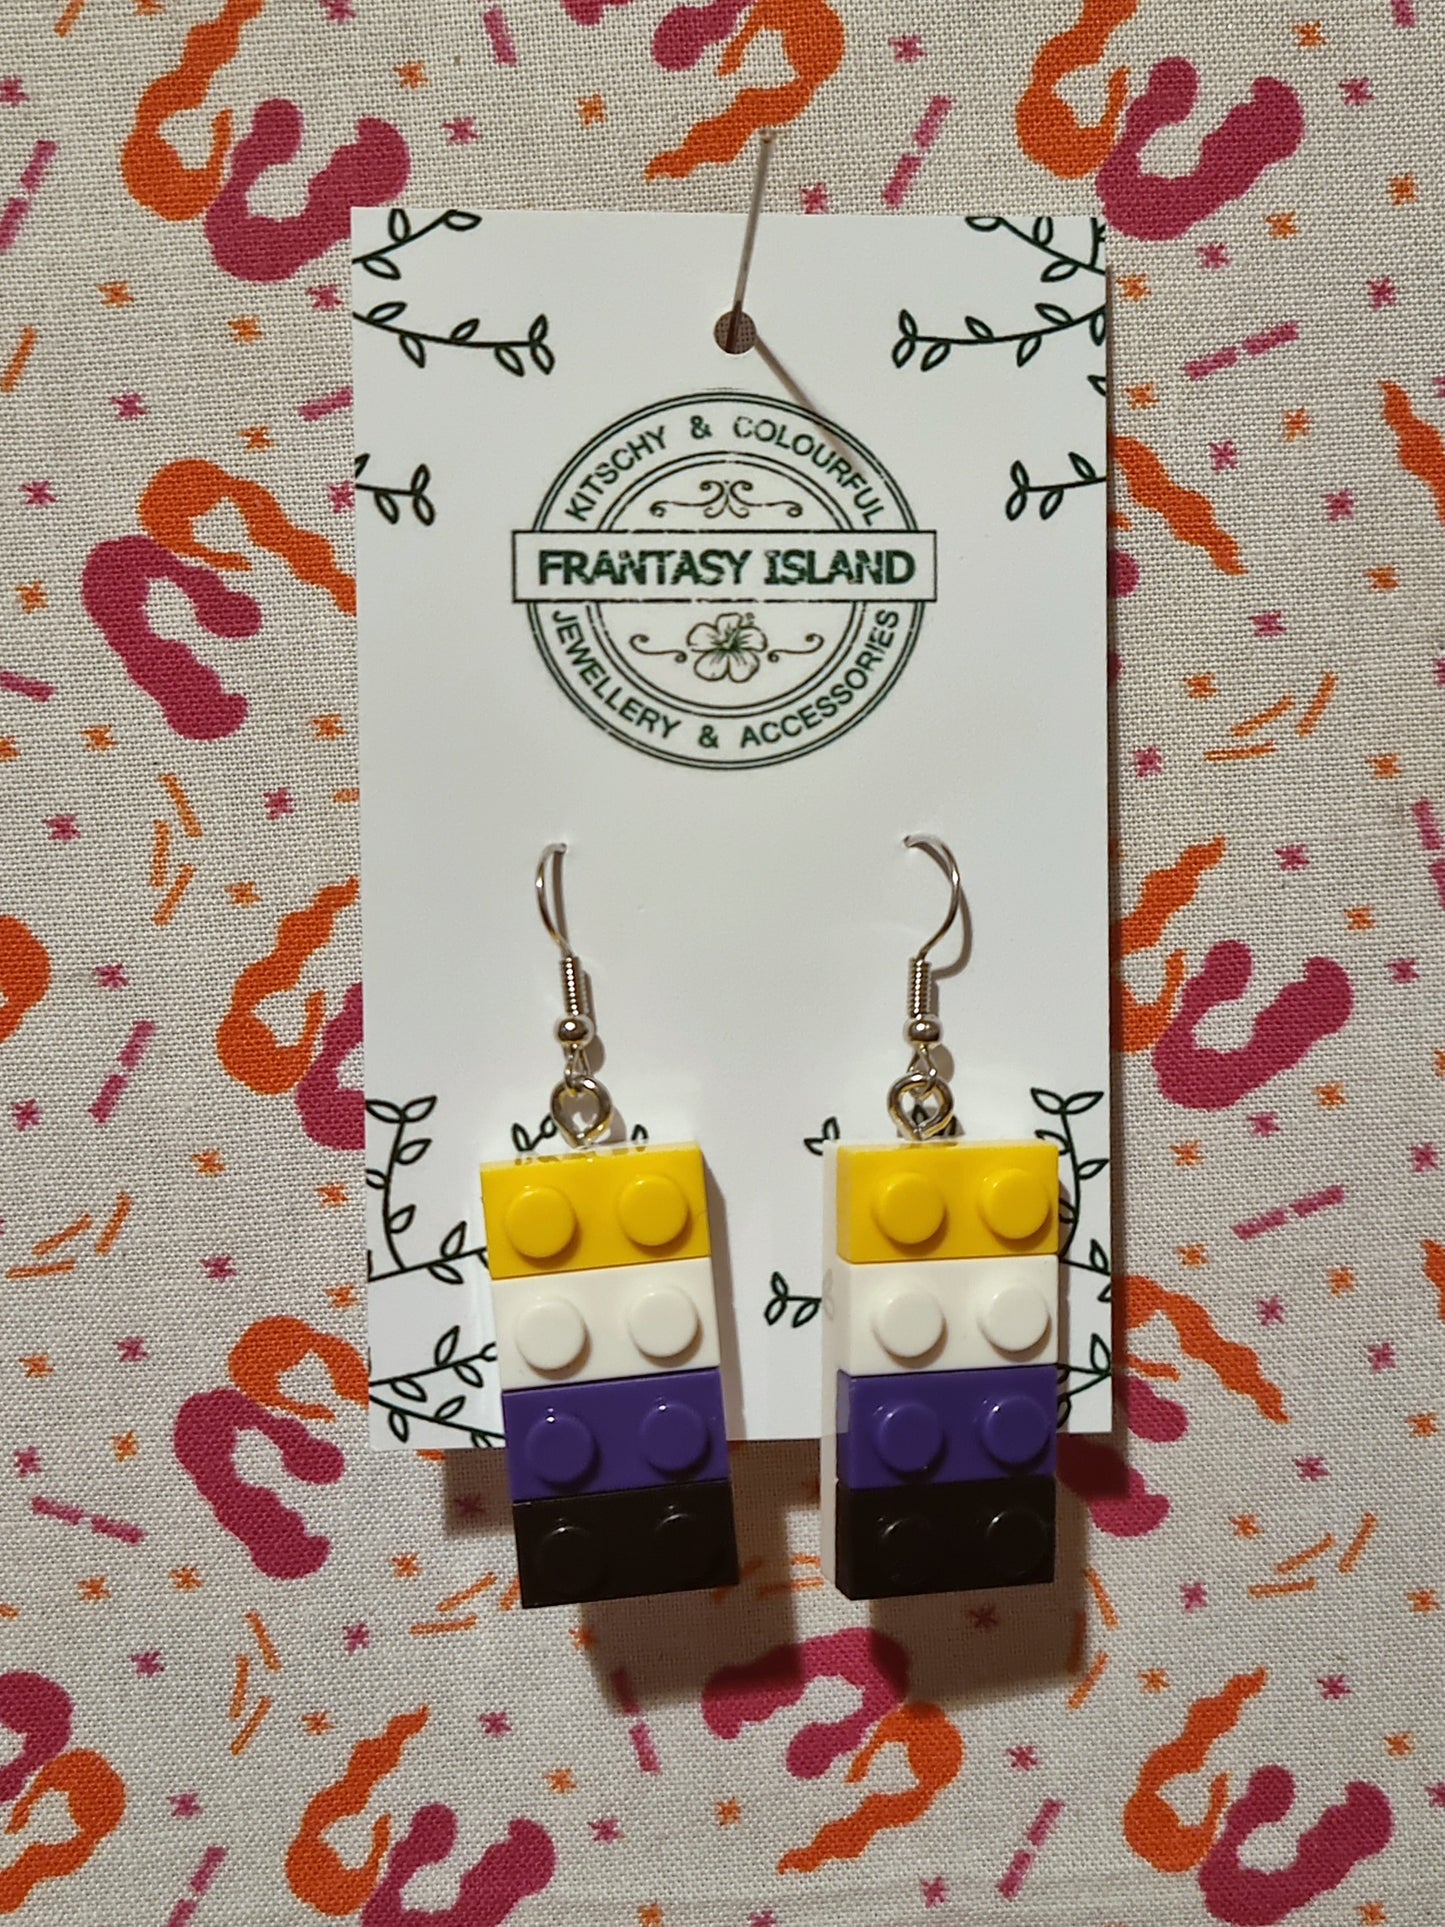 Lego Pride Earrings